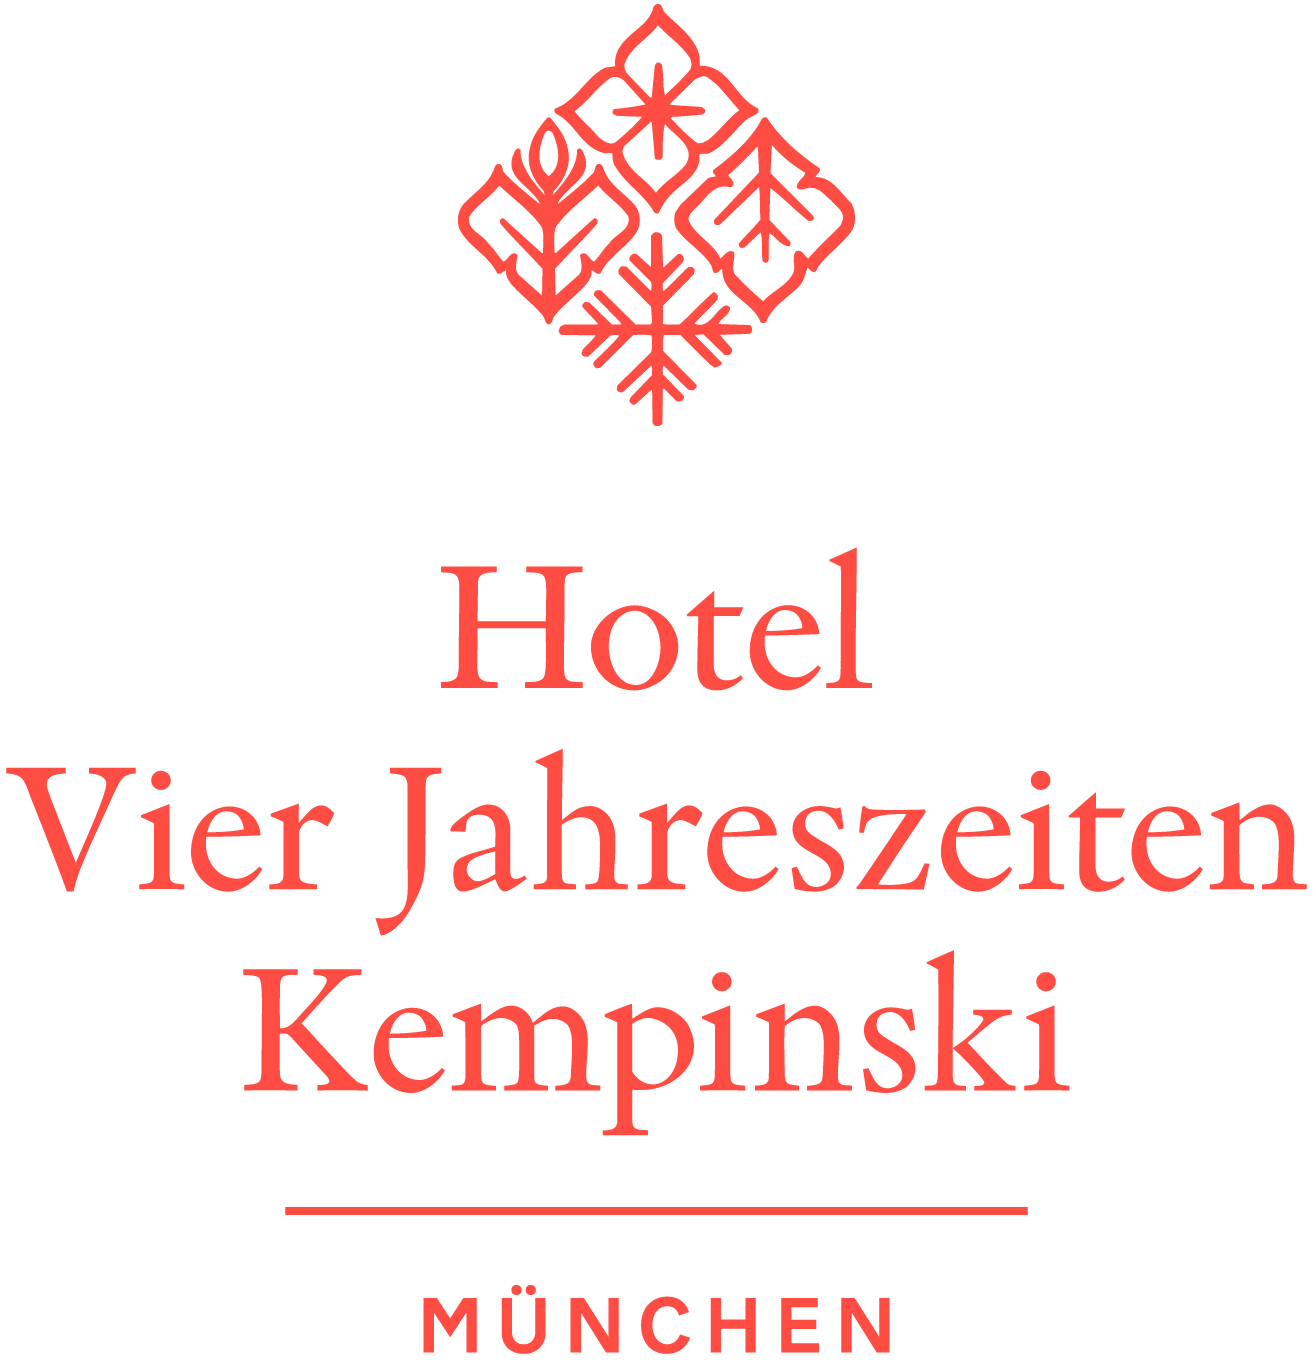 Hotel Vier Jahreszeiten Kempinski Munich
